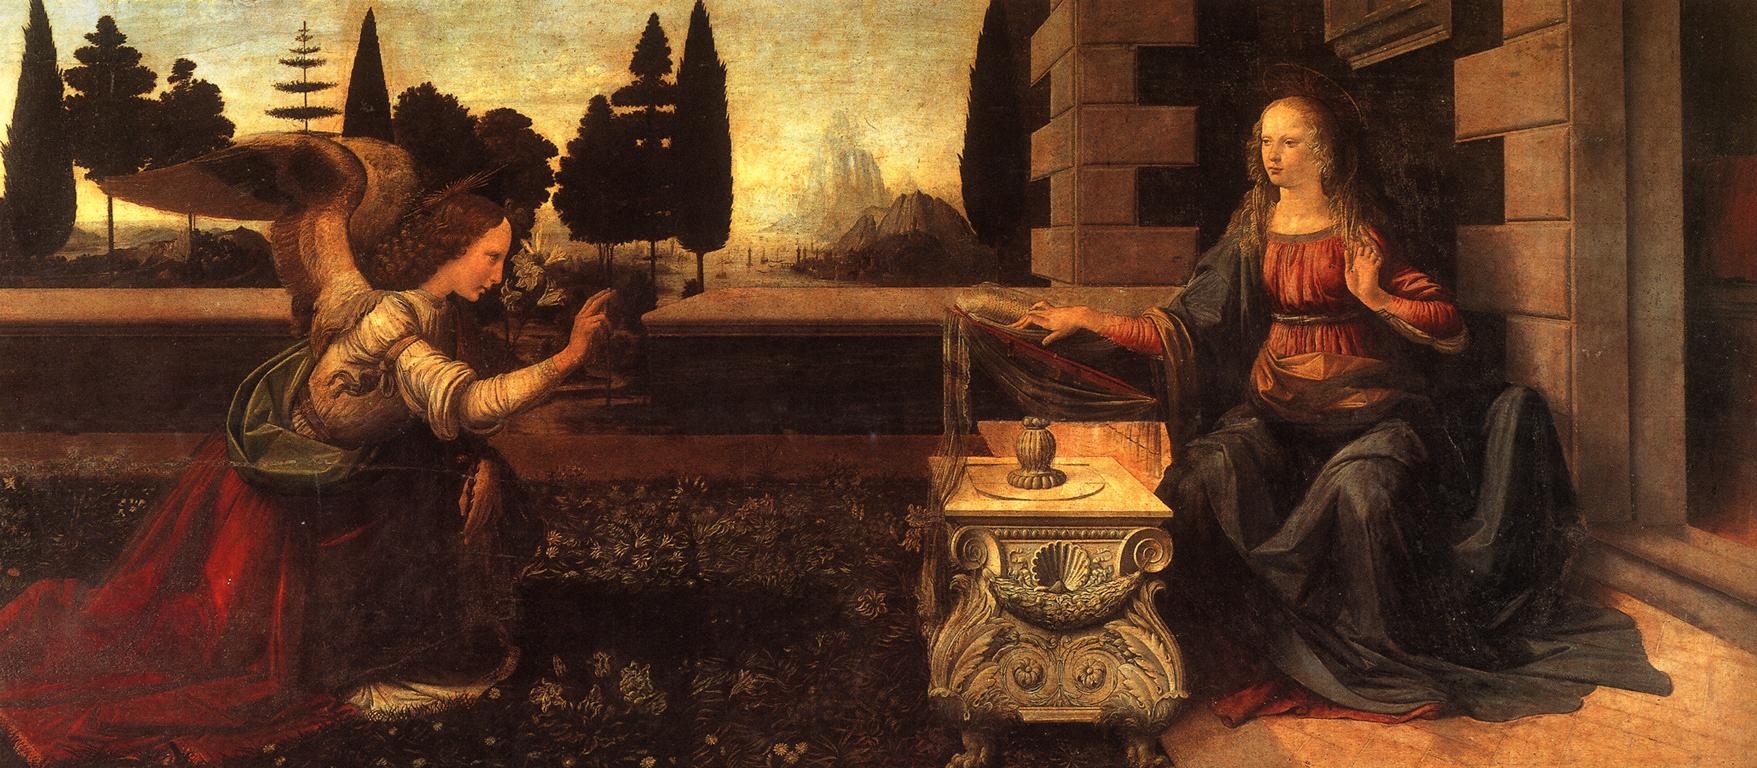 聖母領報 by Leonardo da Vinci - 大約西元 1472 - 217 x 98 公分 